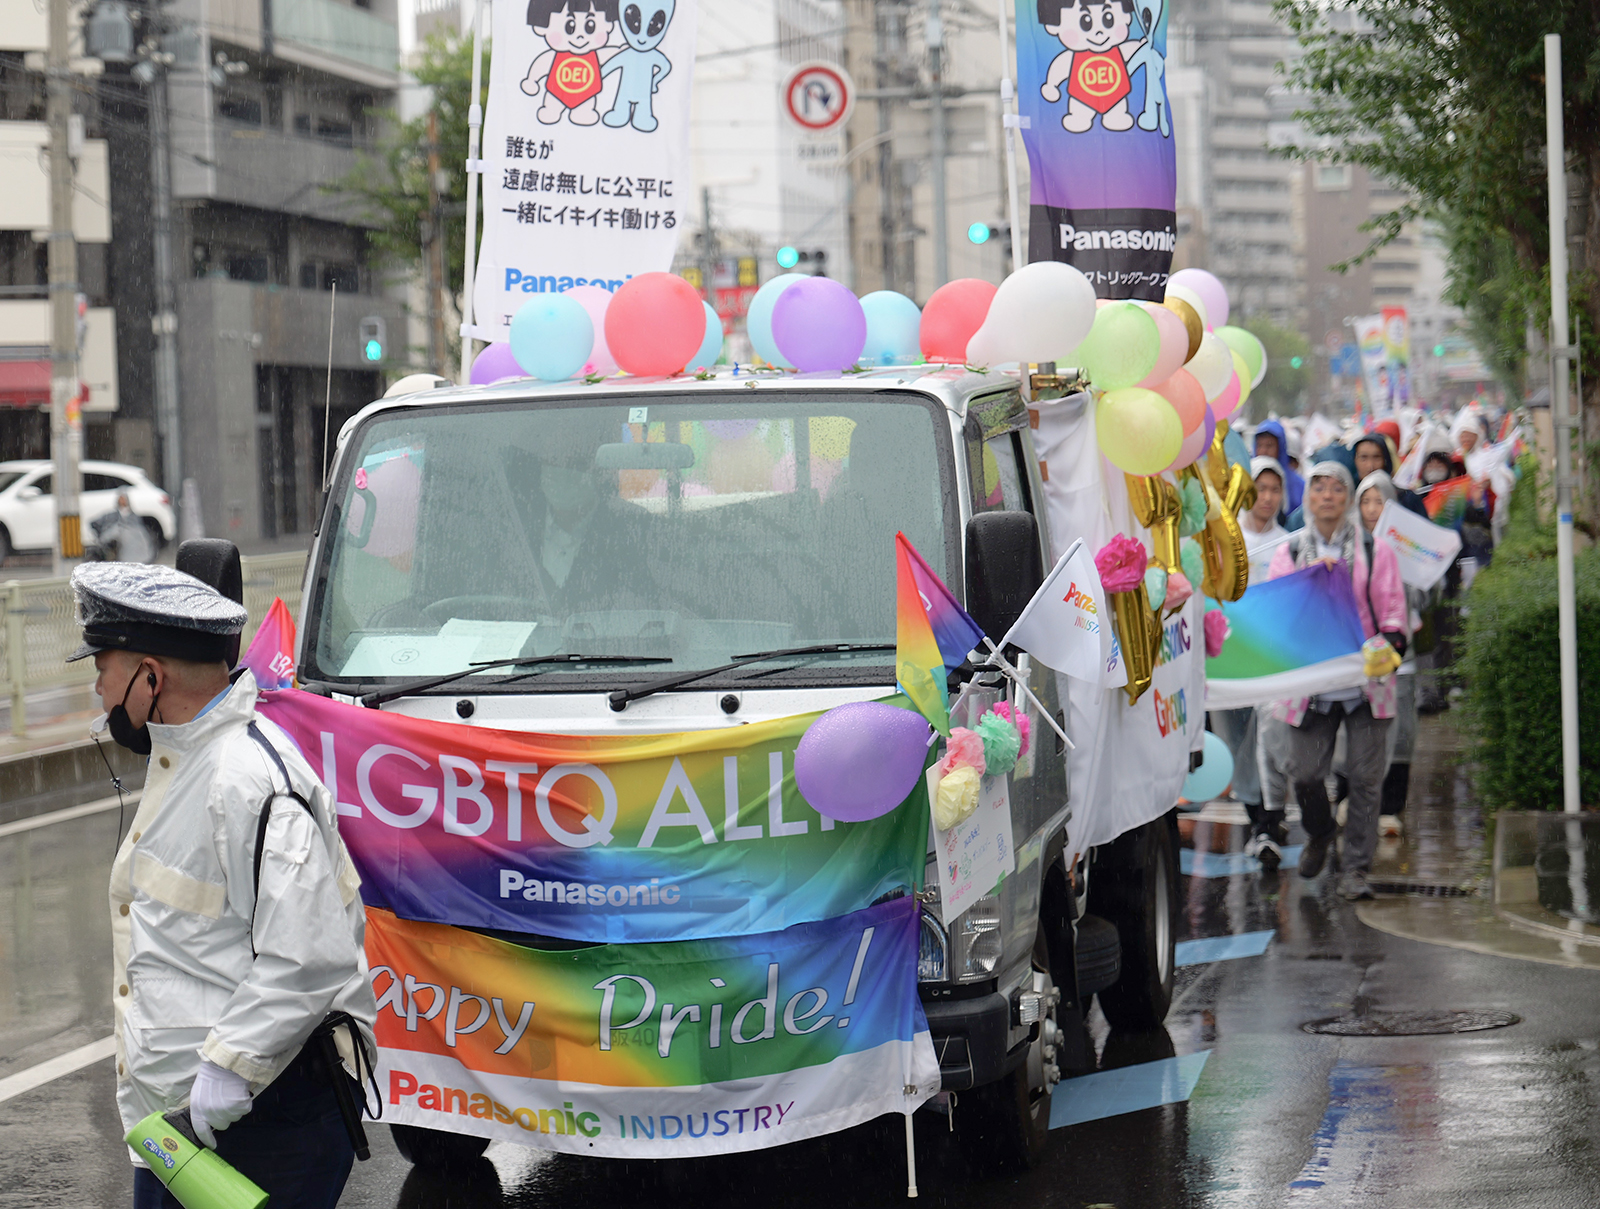 Photo: A scene from the Kansai Rainbow Parade